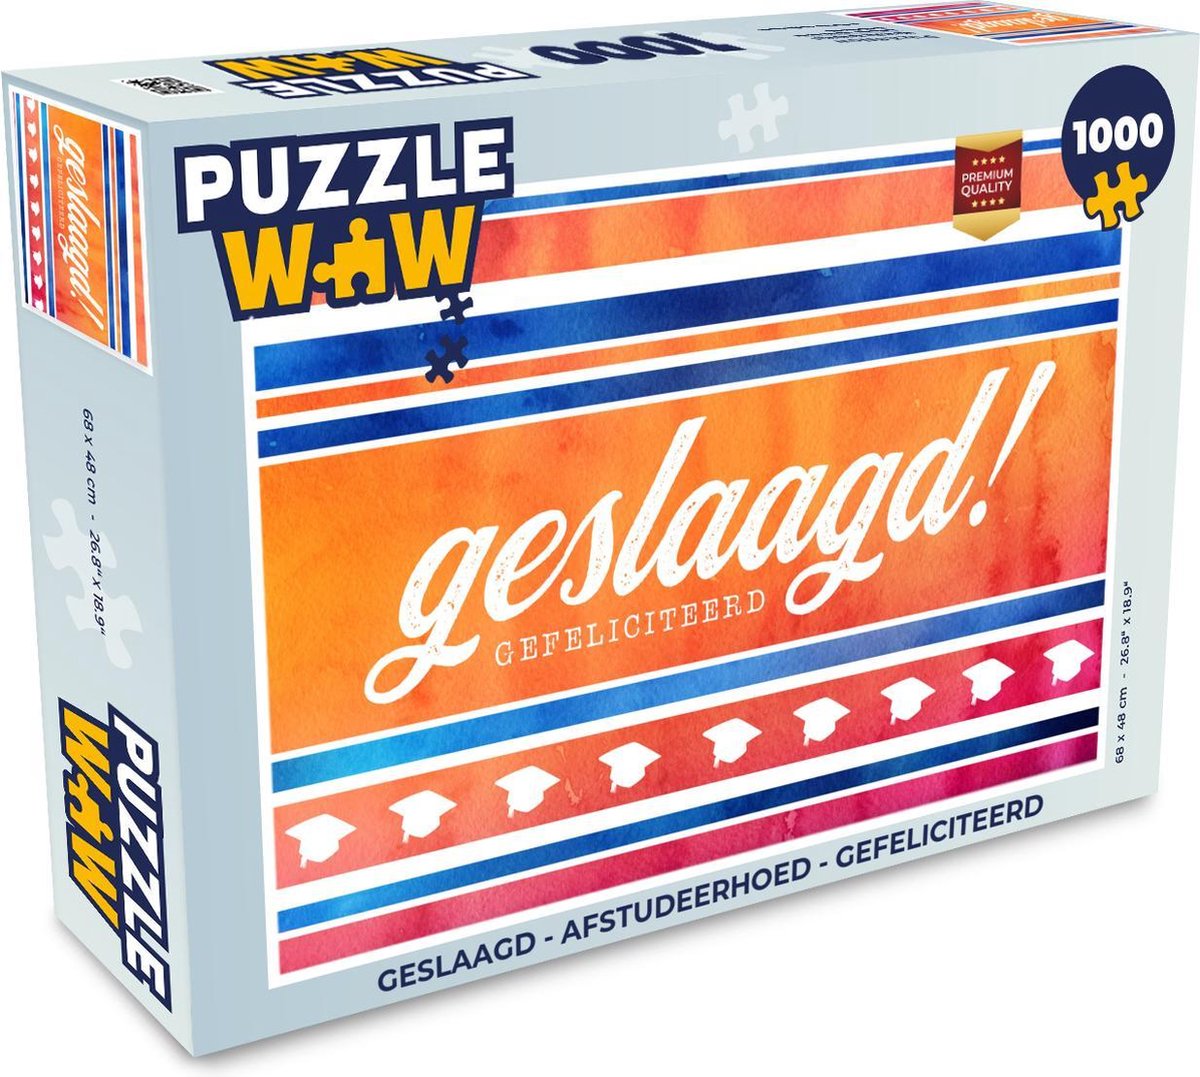 Afbeelding van product PuzzleWow  Puzzel Geslaagd - Afstudeerhoed - Gefeliciteerd - Legpuzzel - Puzzel 1000 stukjes volwassenen